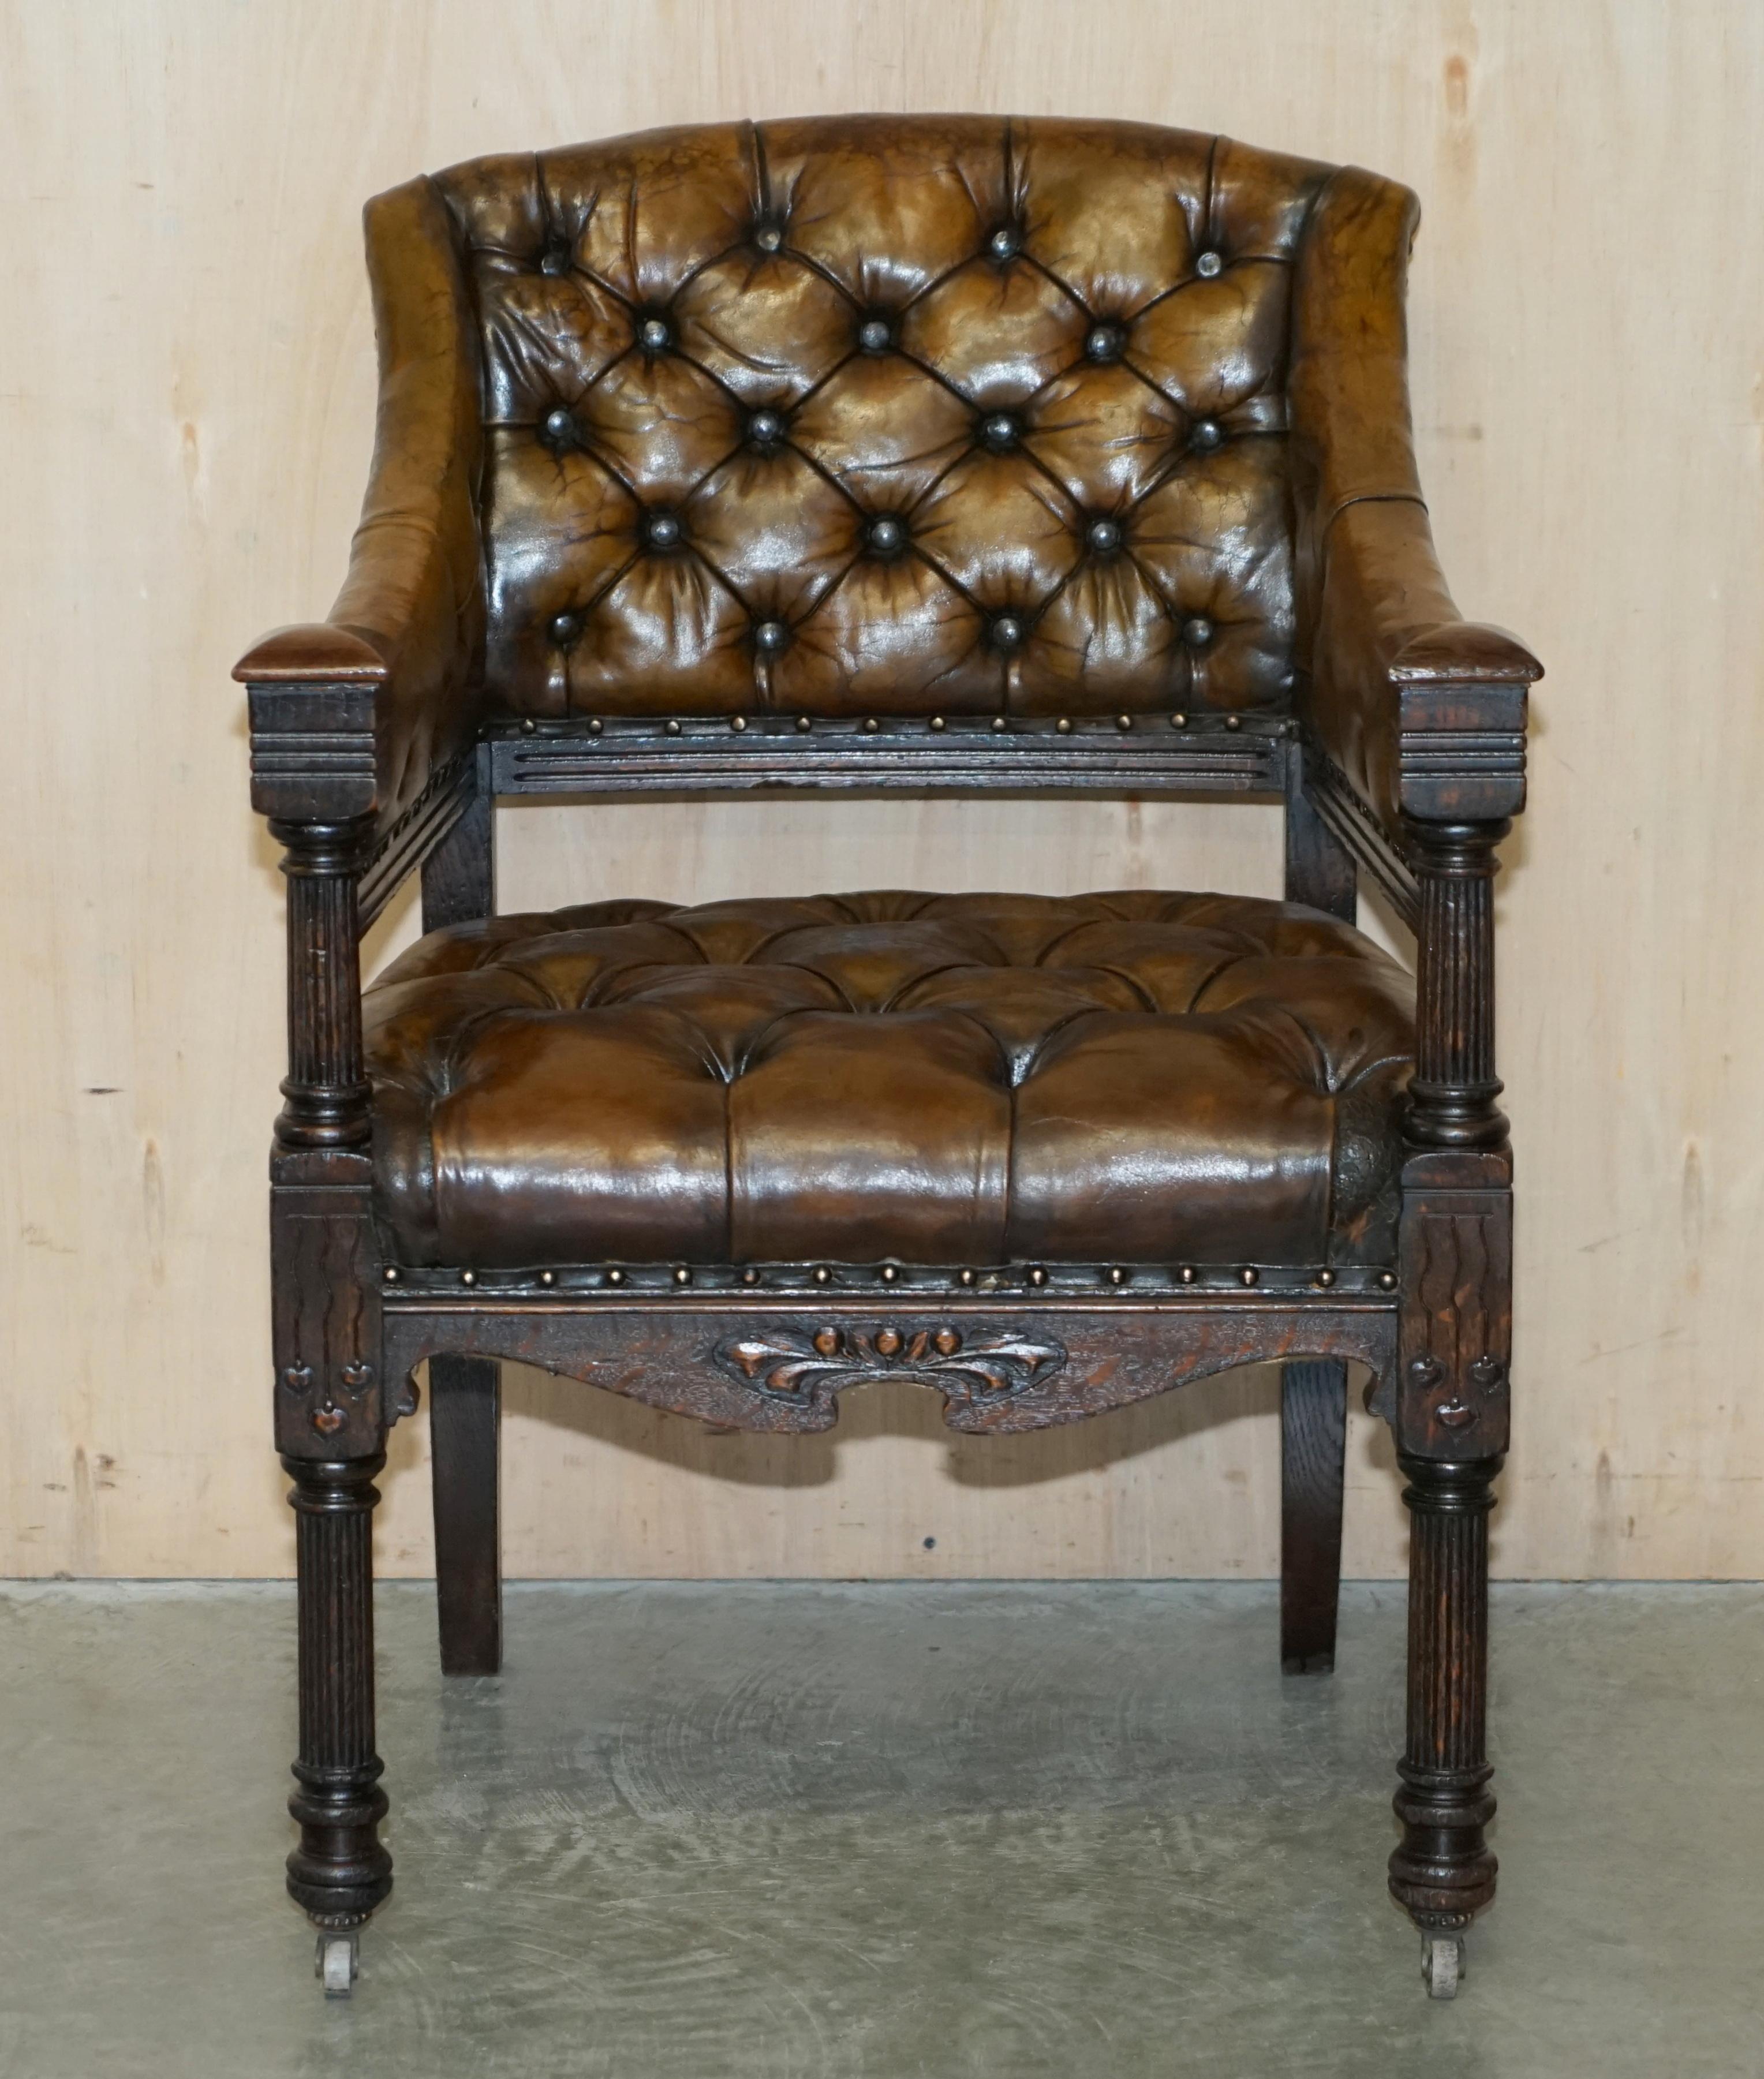 Royal House Antiques

Royal House Antiques freut sich, diesen sehr seltenen und sehr sammelwürdigen, vollständig restaurierten, um 1880 im Jugendstil geschnitzten Chesterfield-Stuhl aus braunem, handgefärbtem Leder zum Verkauf anzubieten.